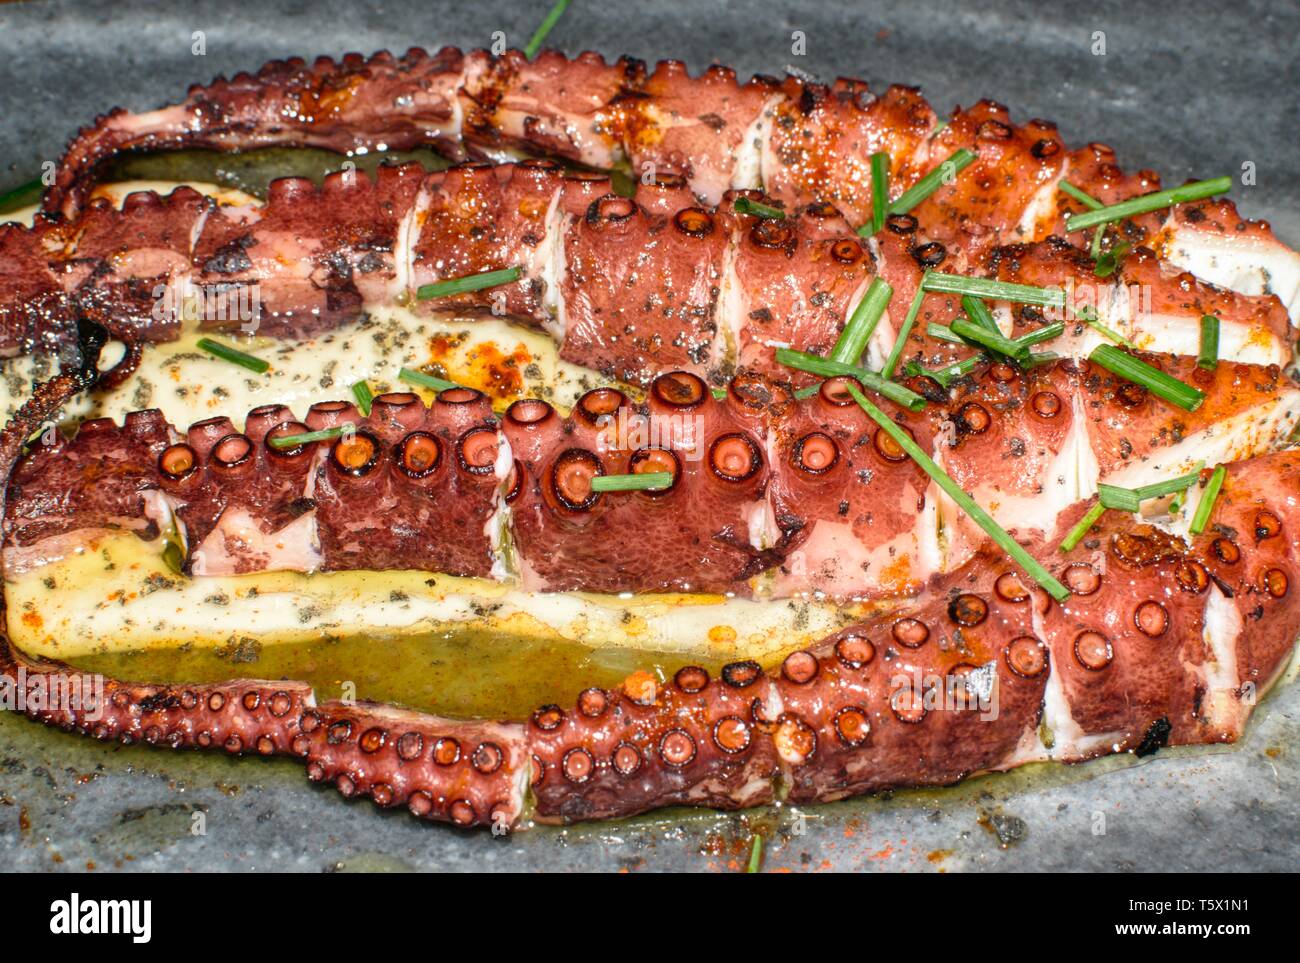 Grill Octopus Tentakeln serviert mit parmentier und Petersilie. Lecker Tintenfisch Tentakel, typisch Spanische Gerichte. BBQ Kraken Spanien, Galizisch Rezept. Stockfoto